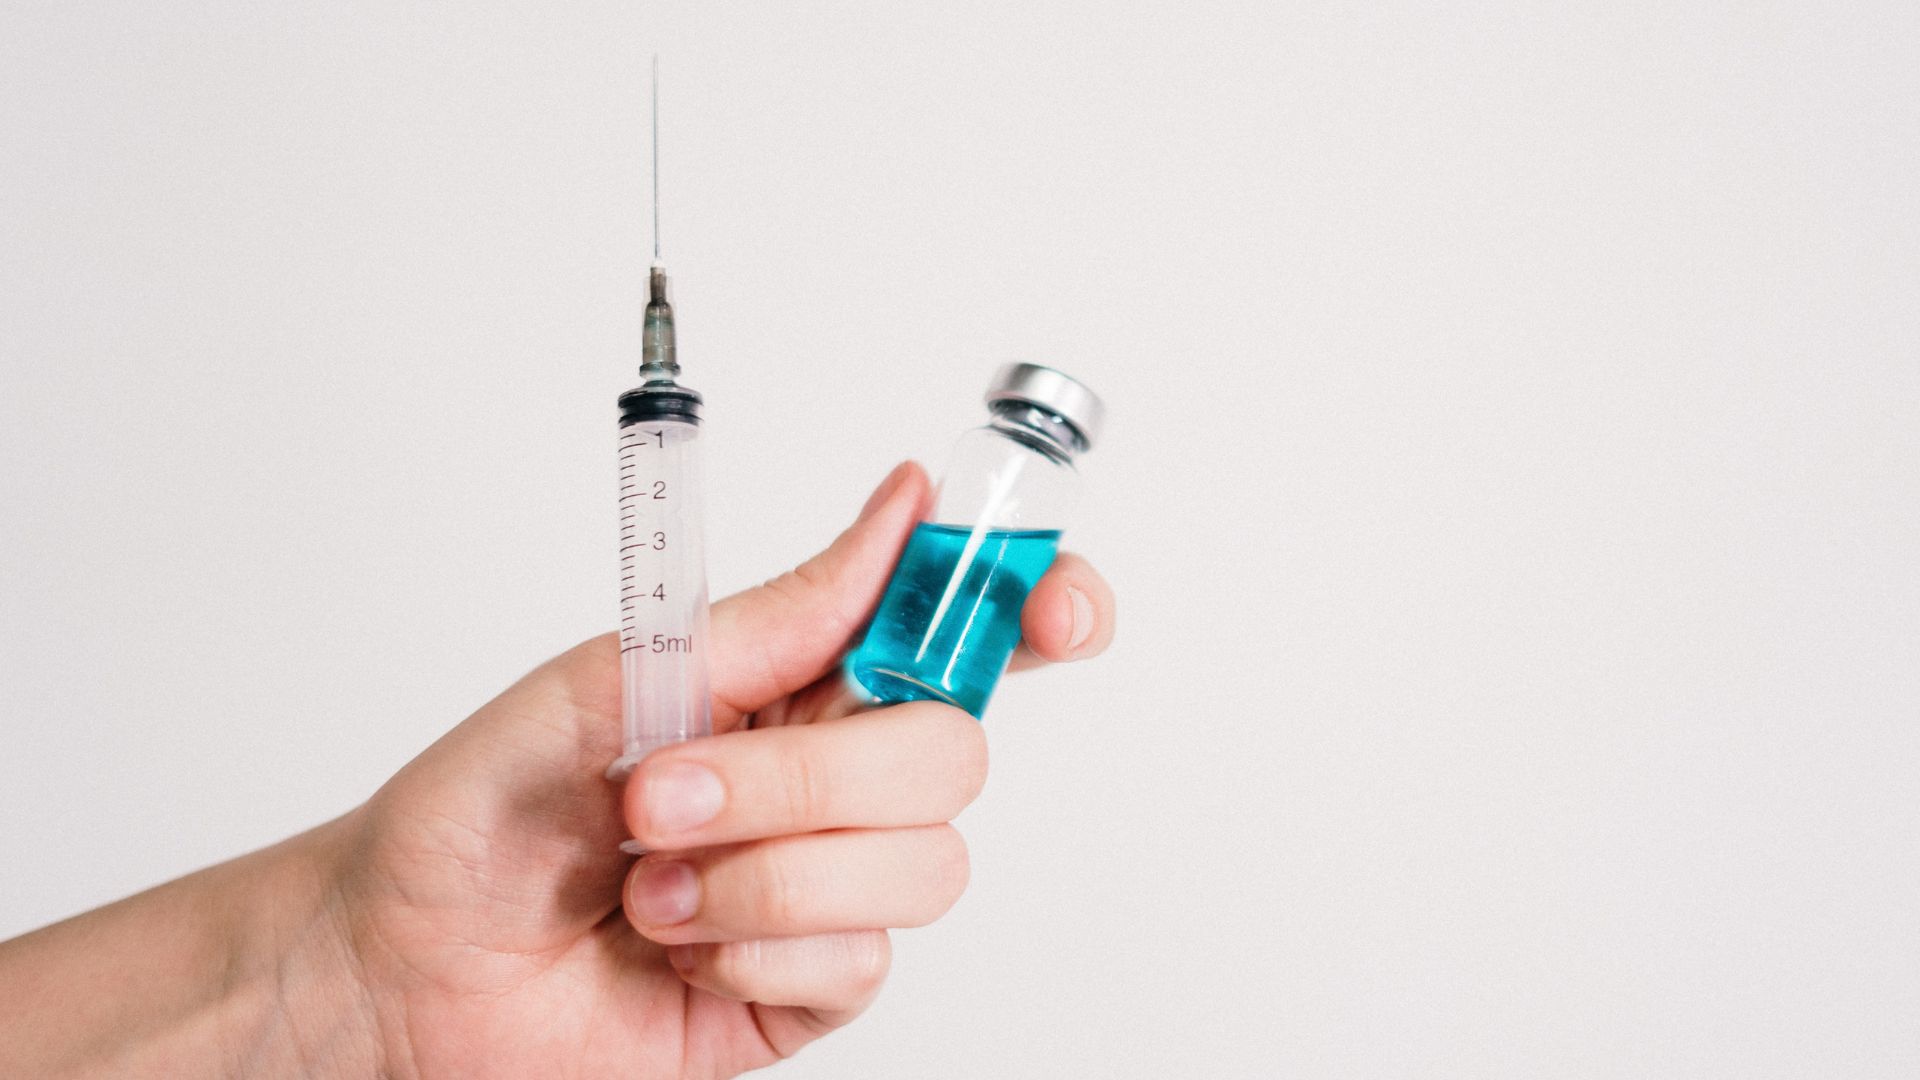 une nouvelel etude affirme que le vaccin contre le covid aurait des effets (bénins) sur les règles